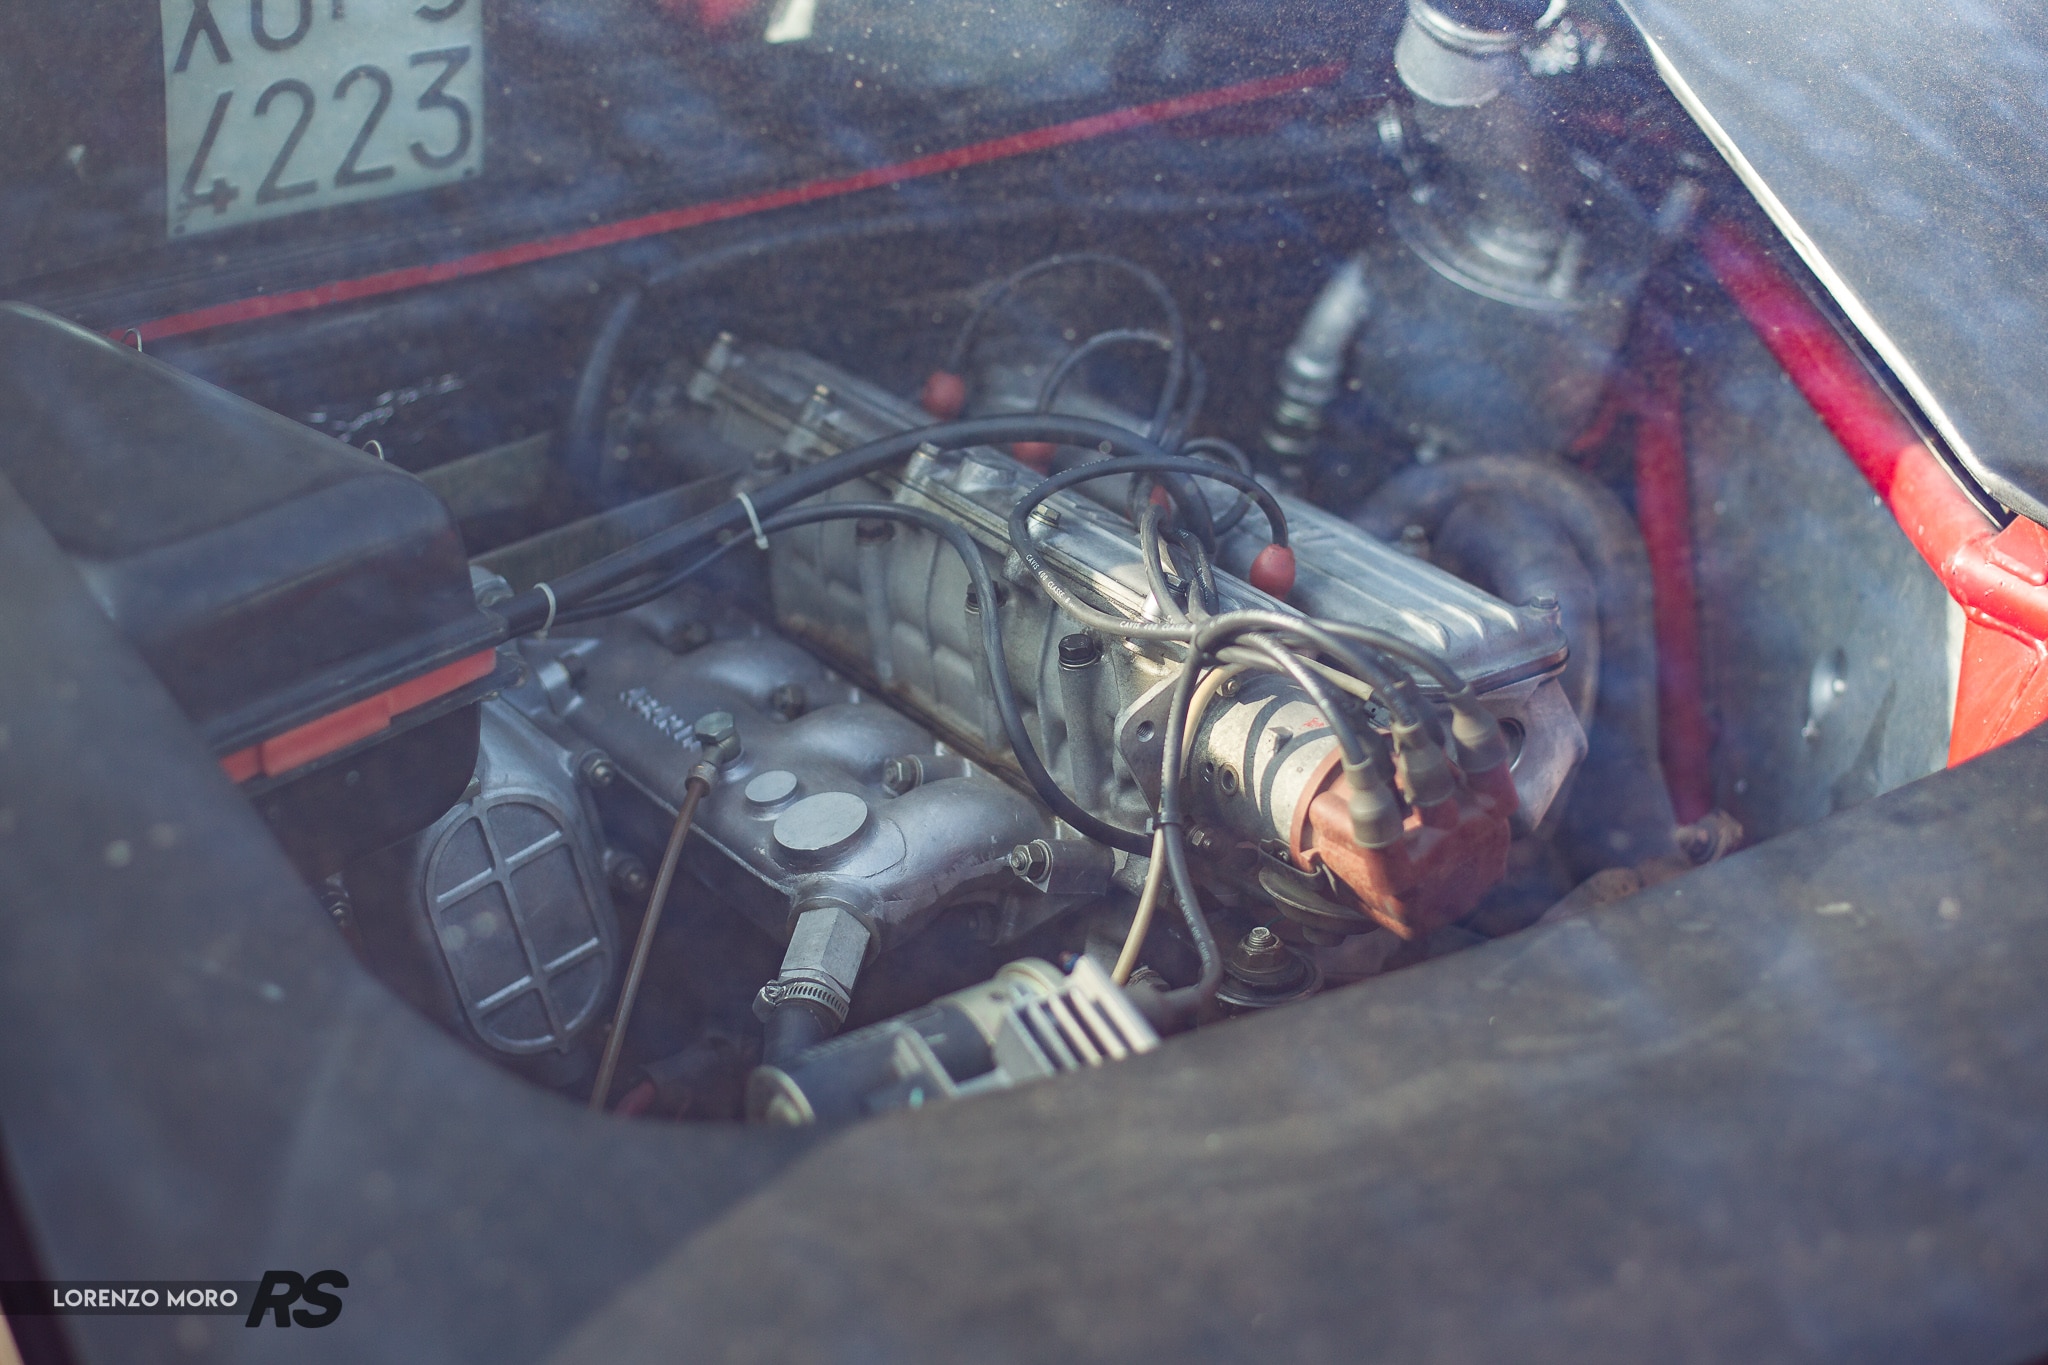 Lancia 037 stradale motore